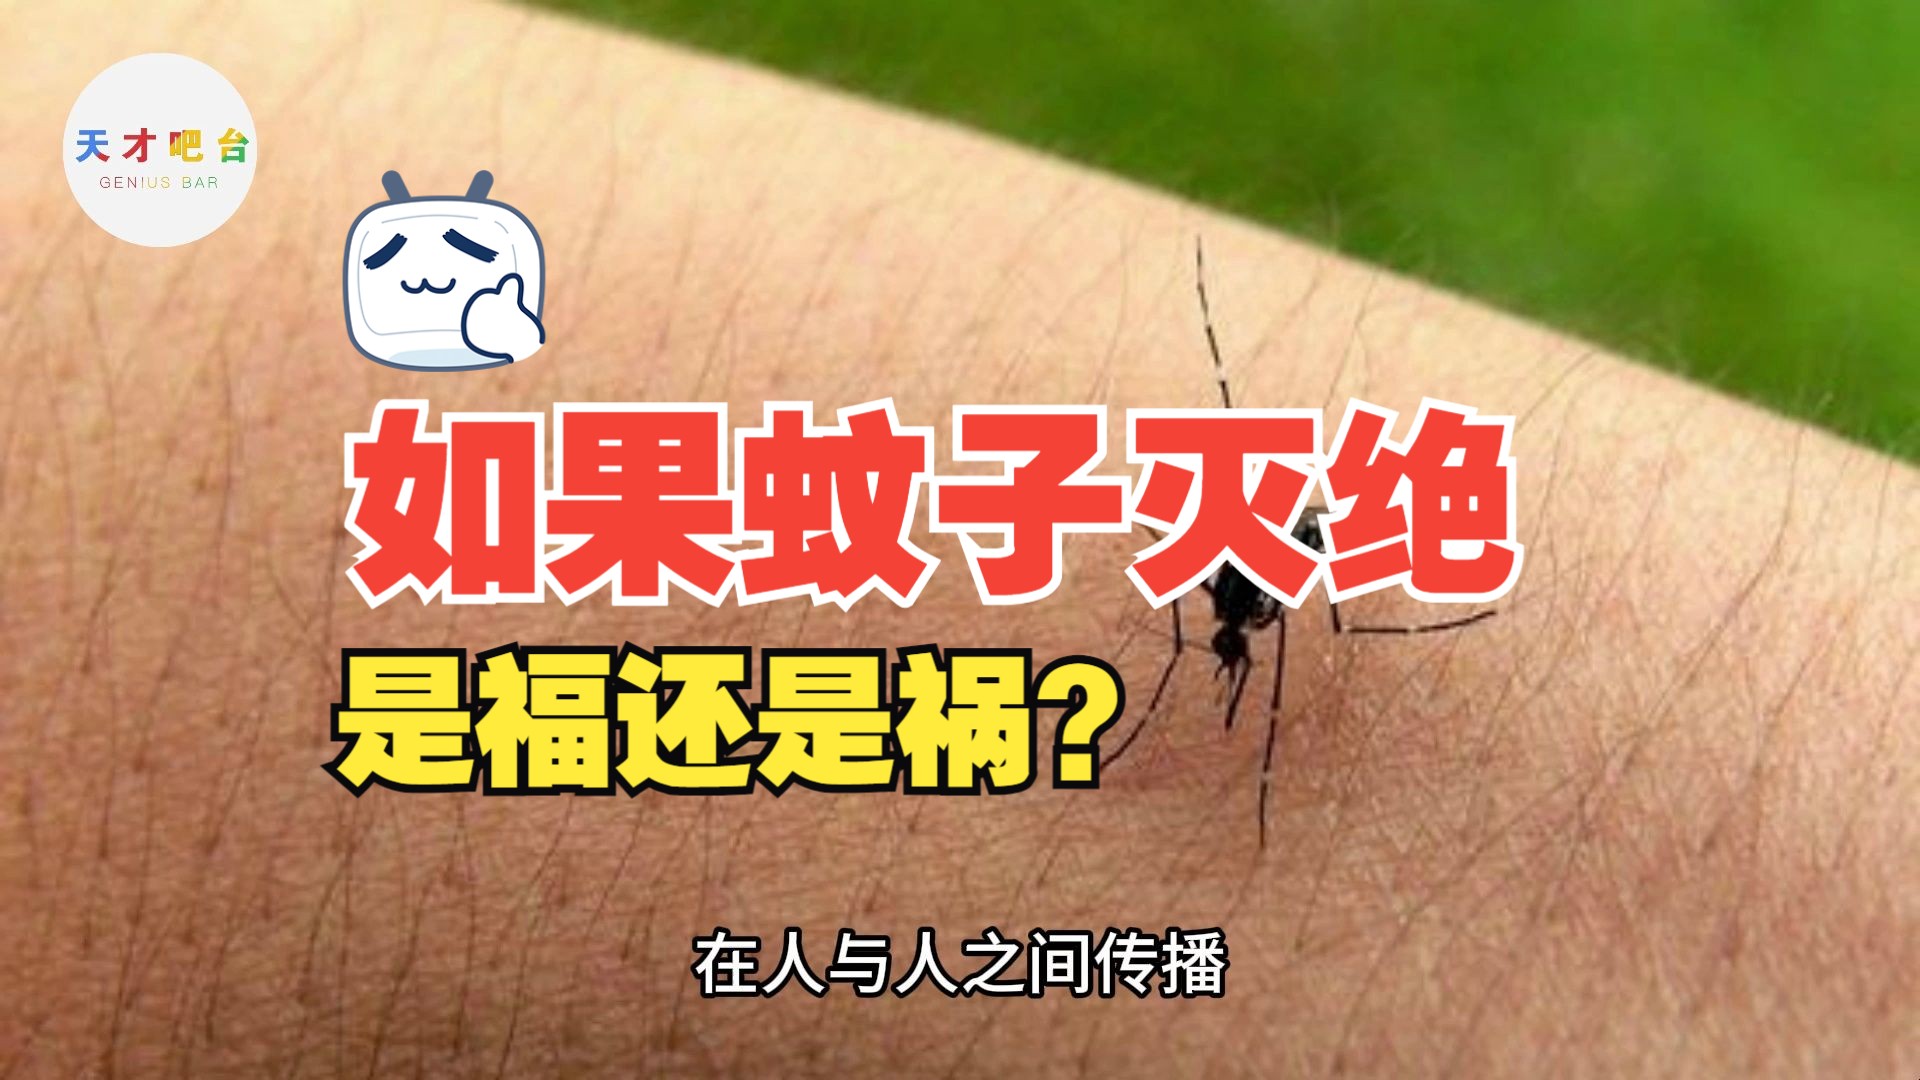 如果蚊子灭绝了会发生什么